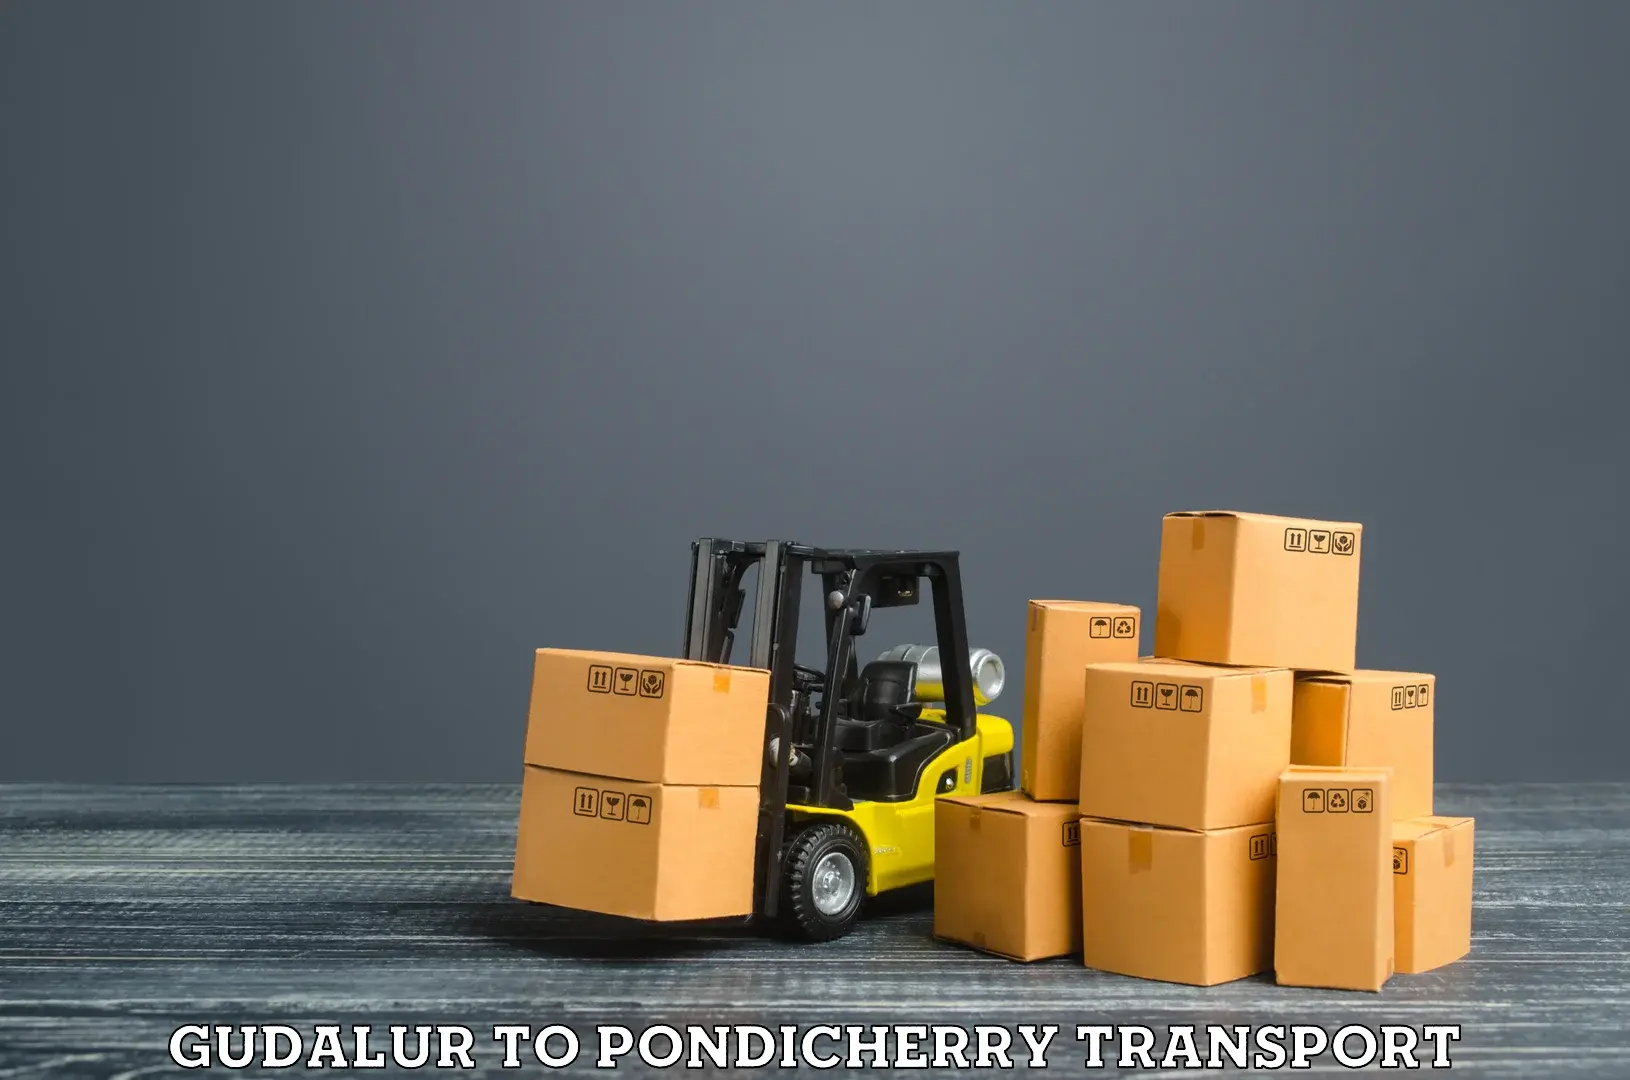 Online transport service Gudalur to Pondicherry